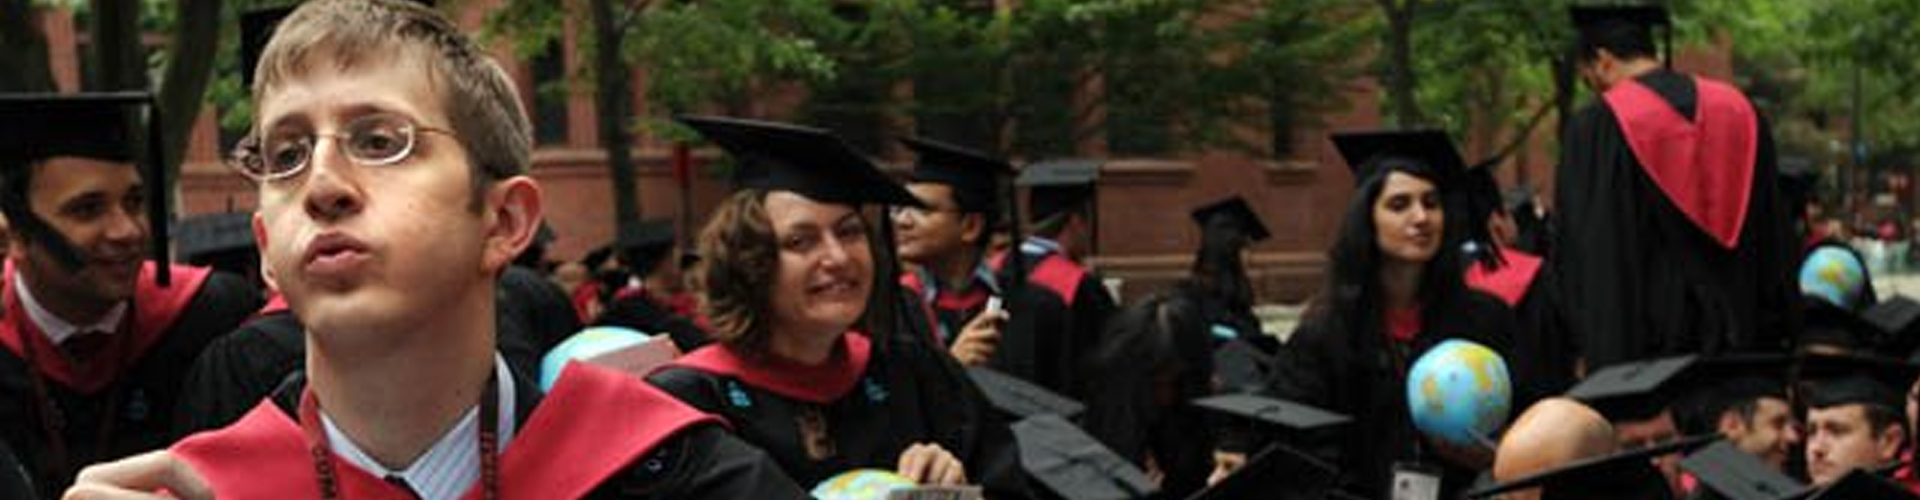 Undergrads Around the World Face Student Loan Debt